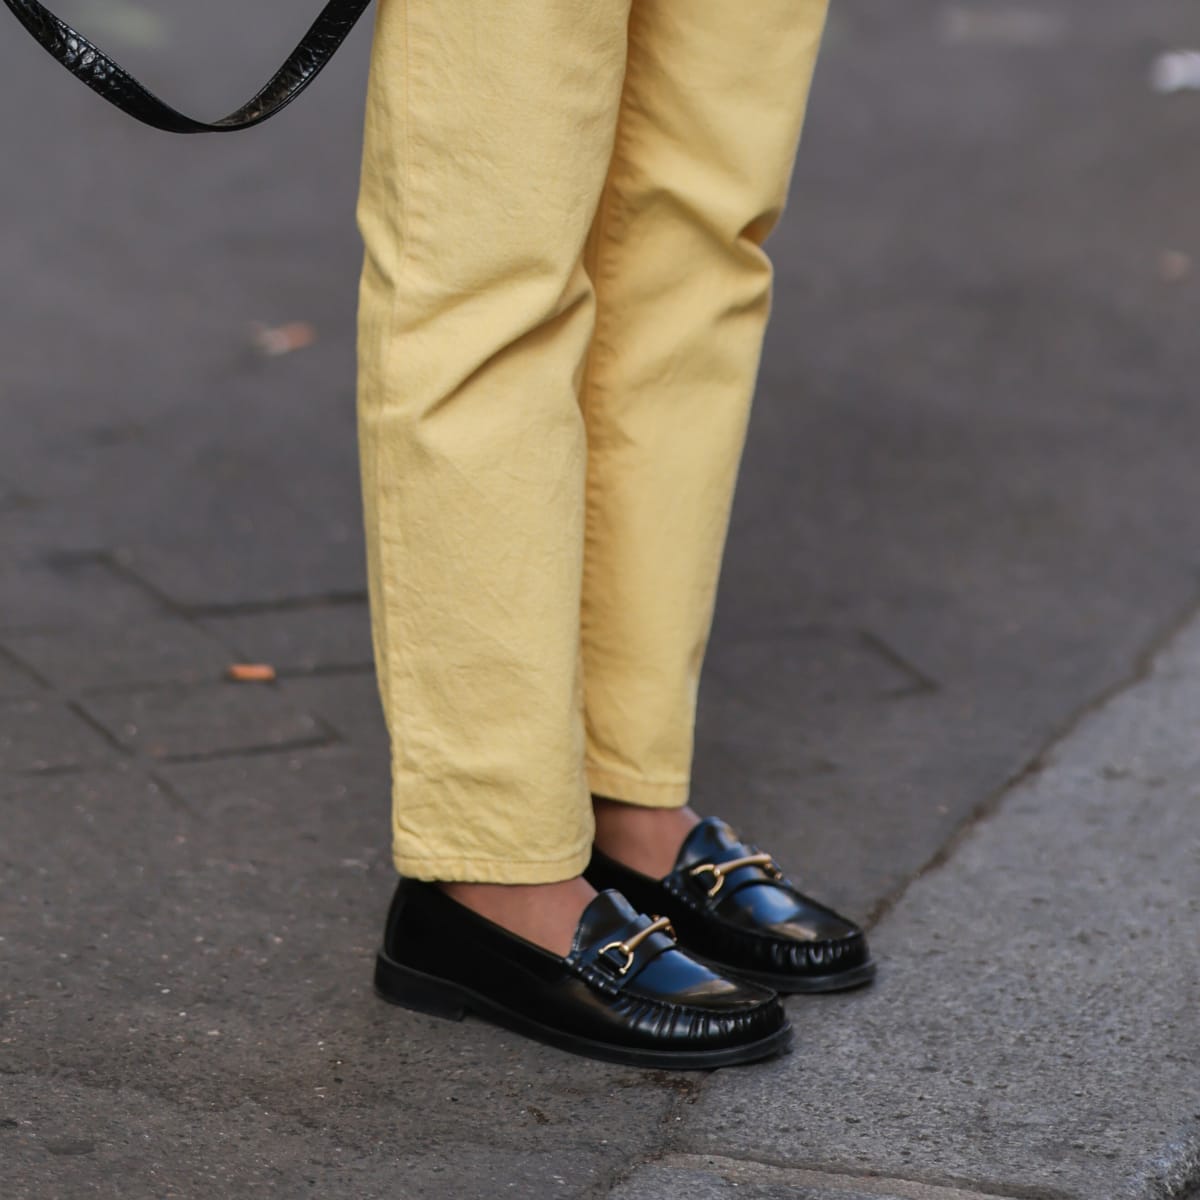 Sig til side Citron specielt Loafers Are the Versatile MVPs of Footwear - Fashionista